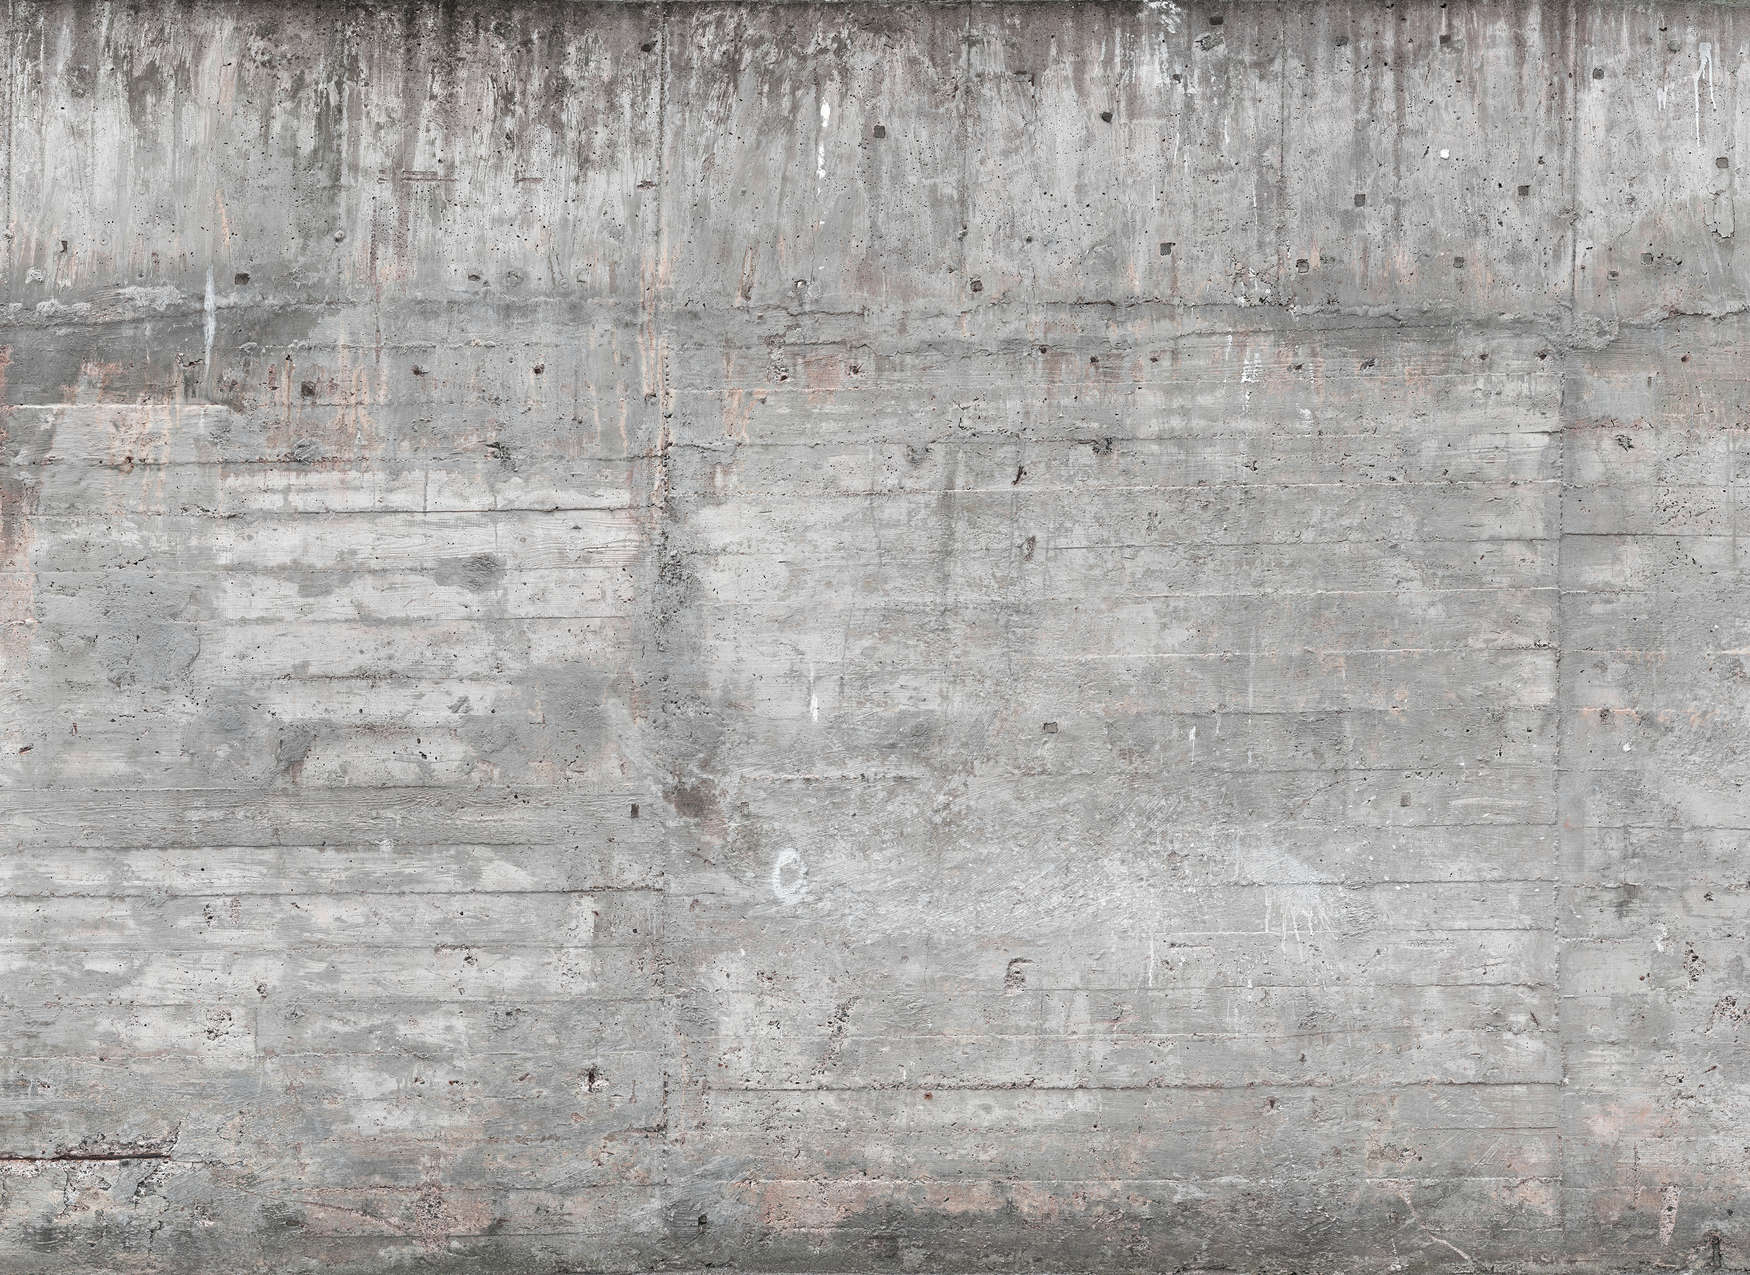             Mur en béton de style industriel - gris, marron
        